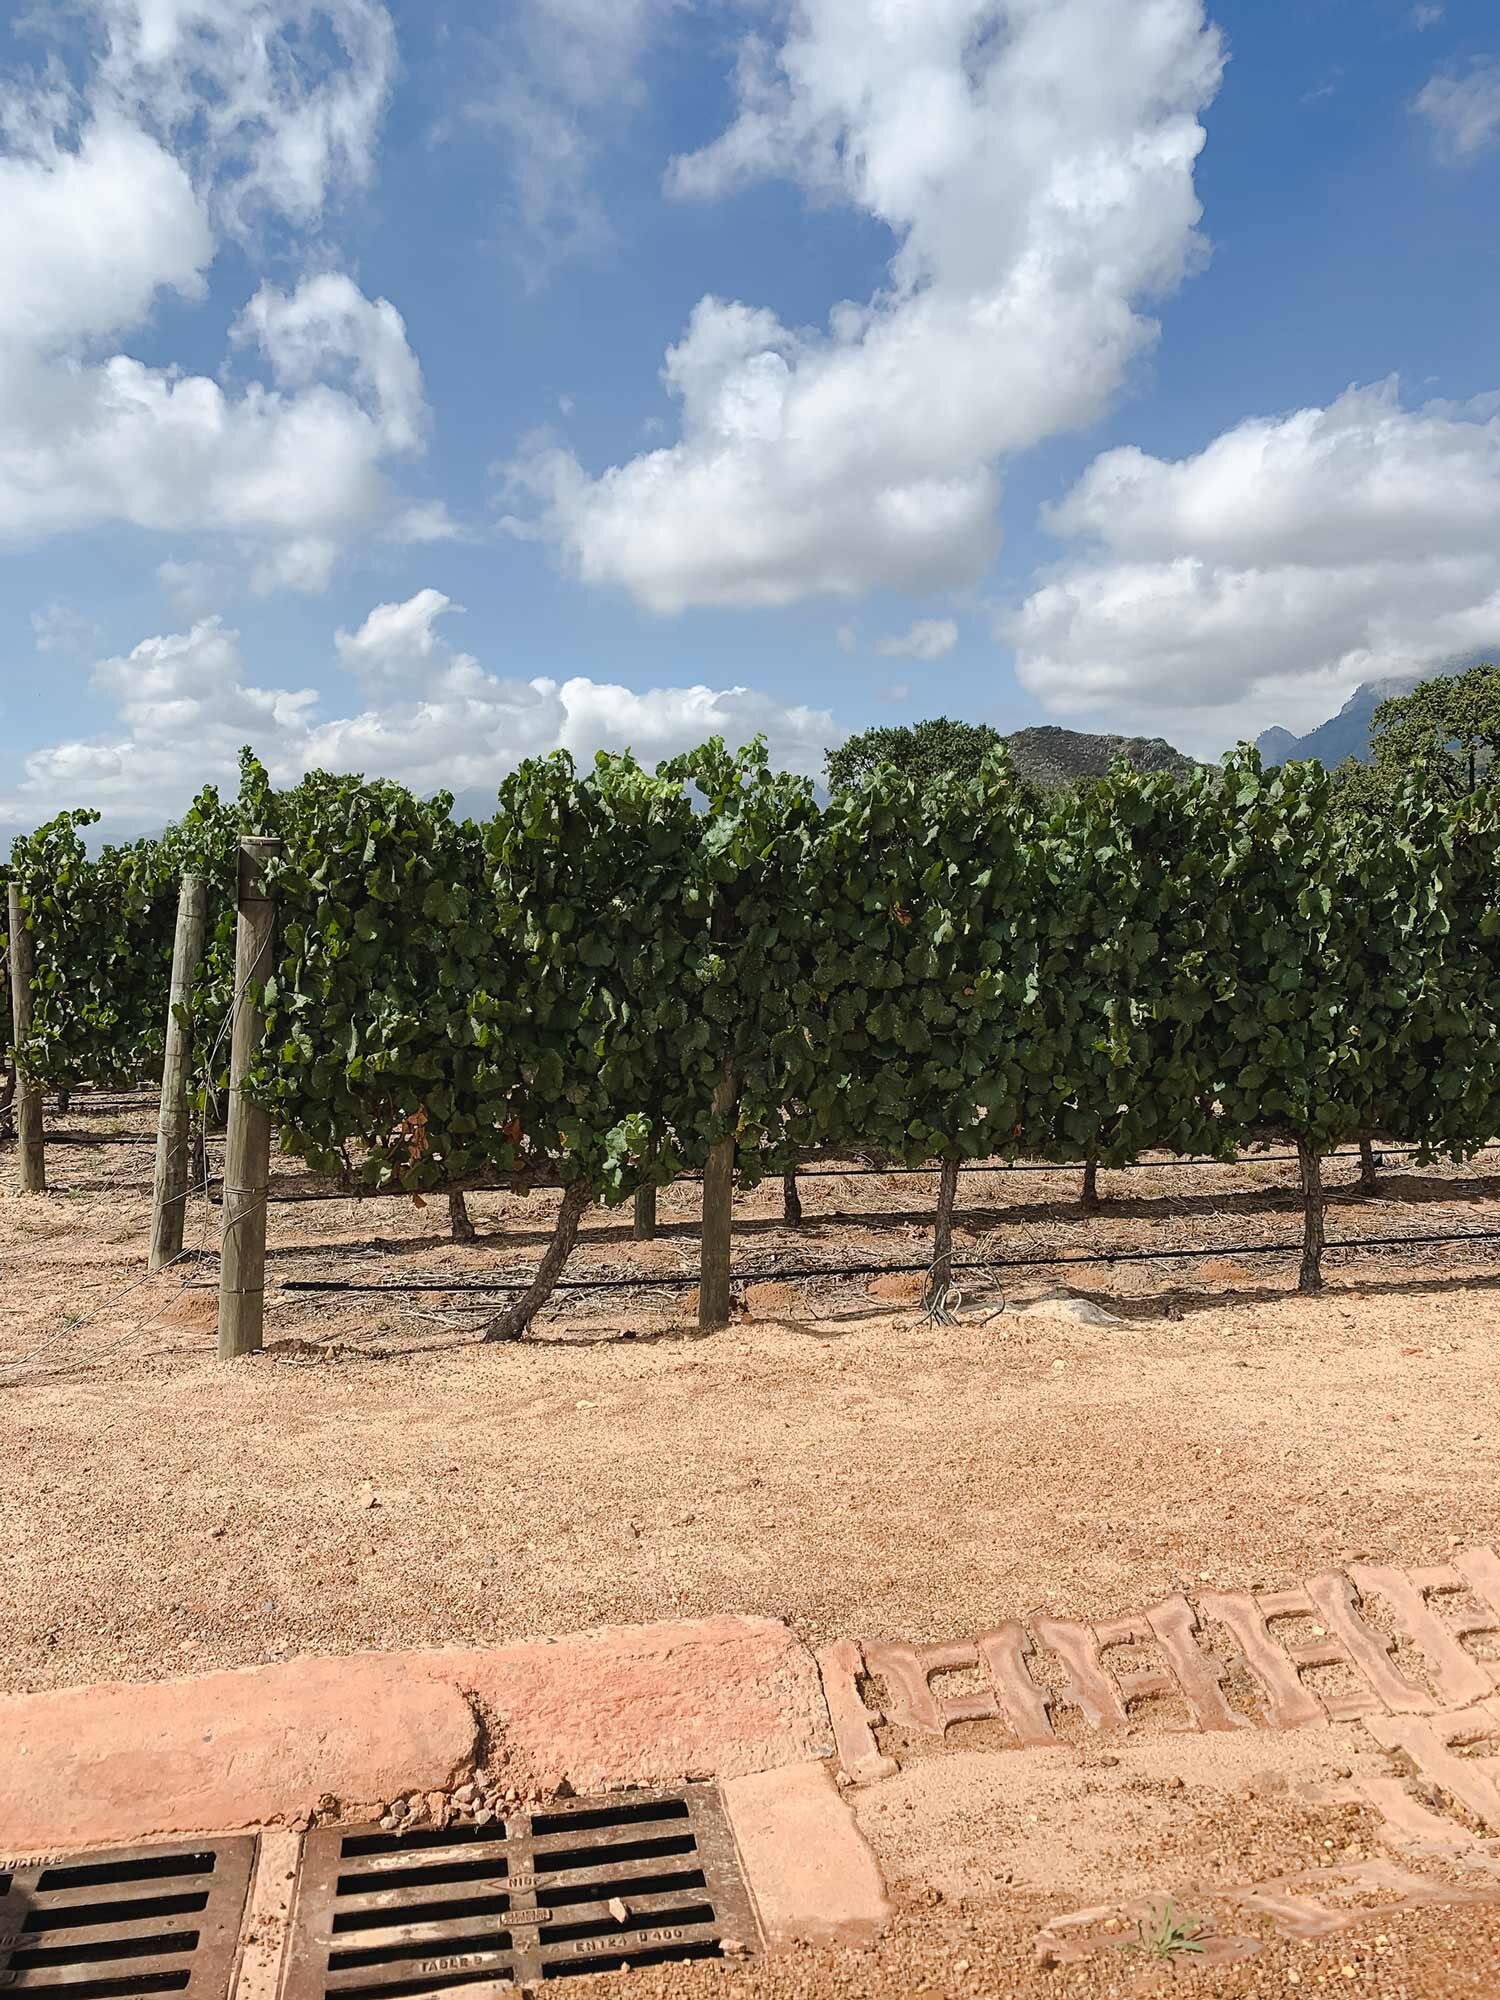 Weinreben in Babylonstoren, ein Weingut, welches wir während unserer Südafrikareise im März 2019 besucht haben.